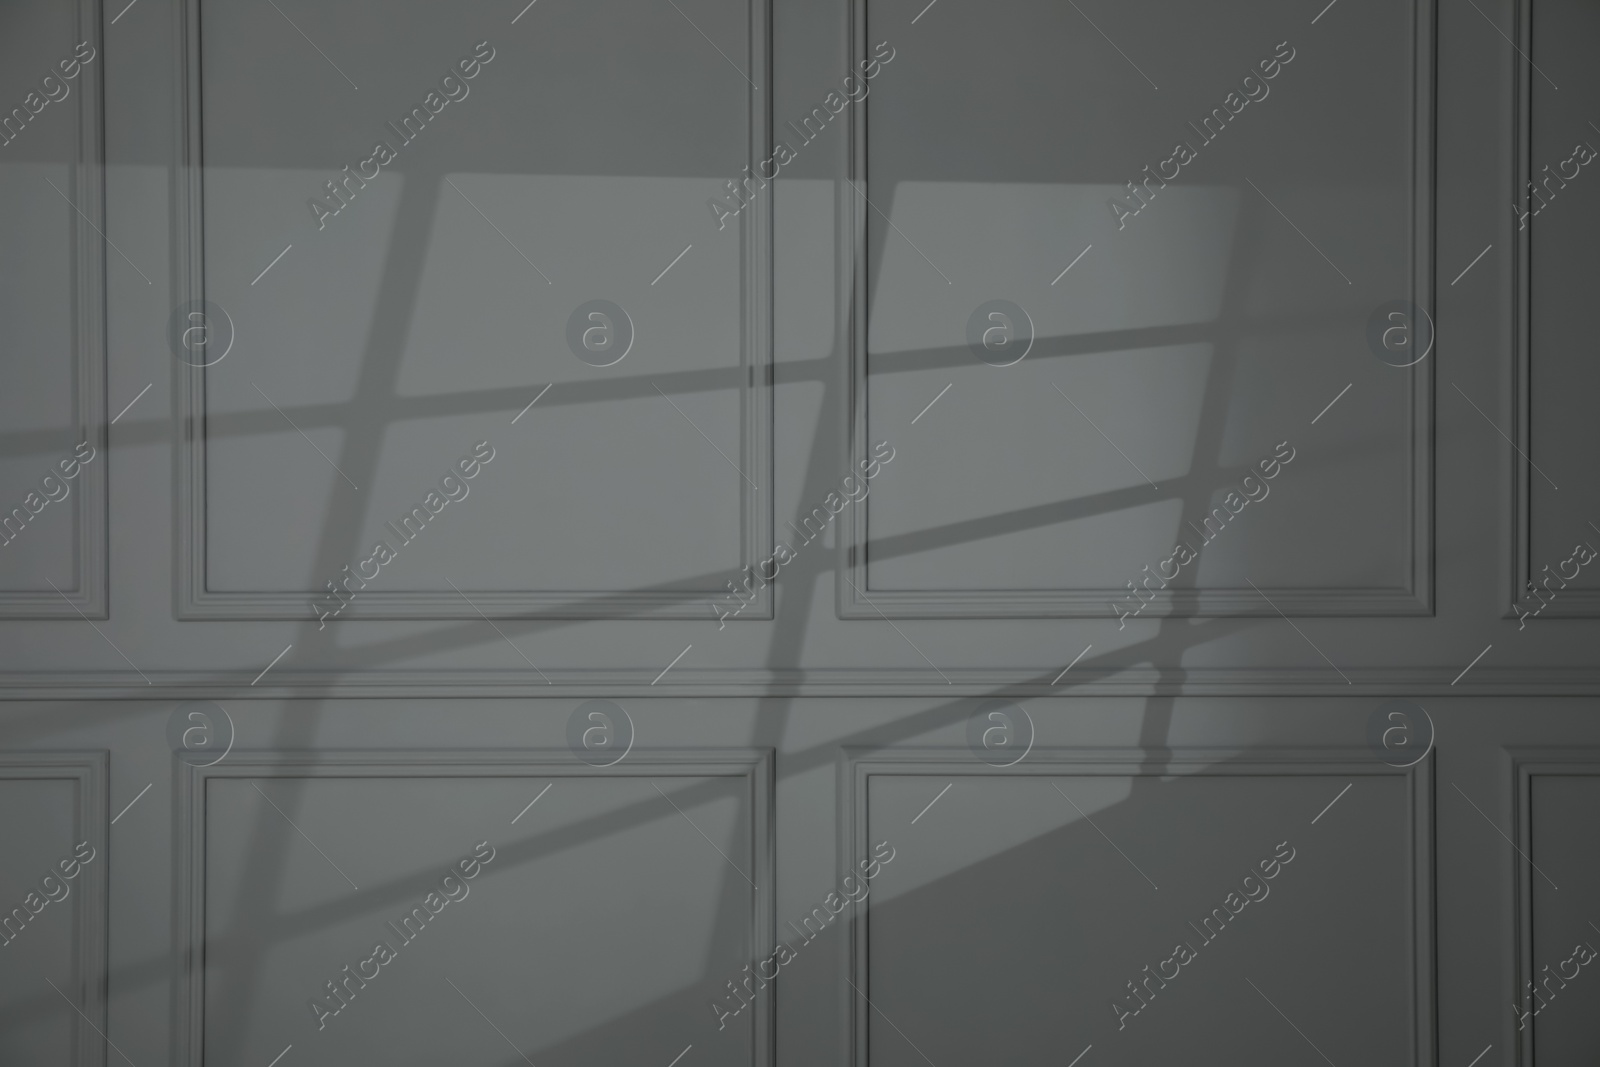 Photo of Shadow from window on dark grey wall indoors